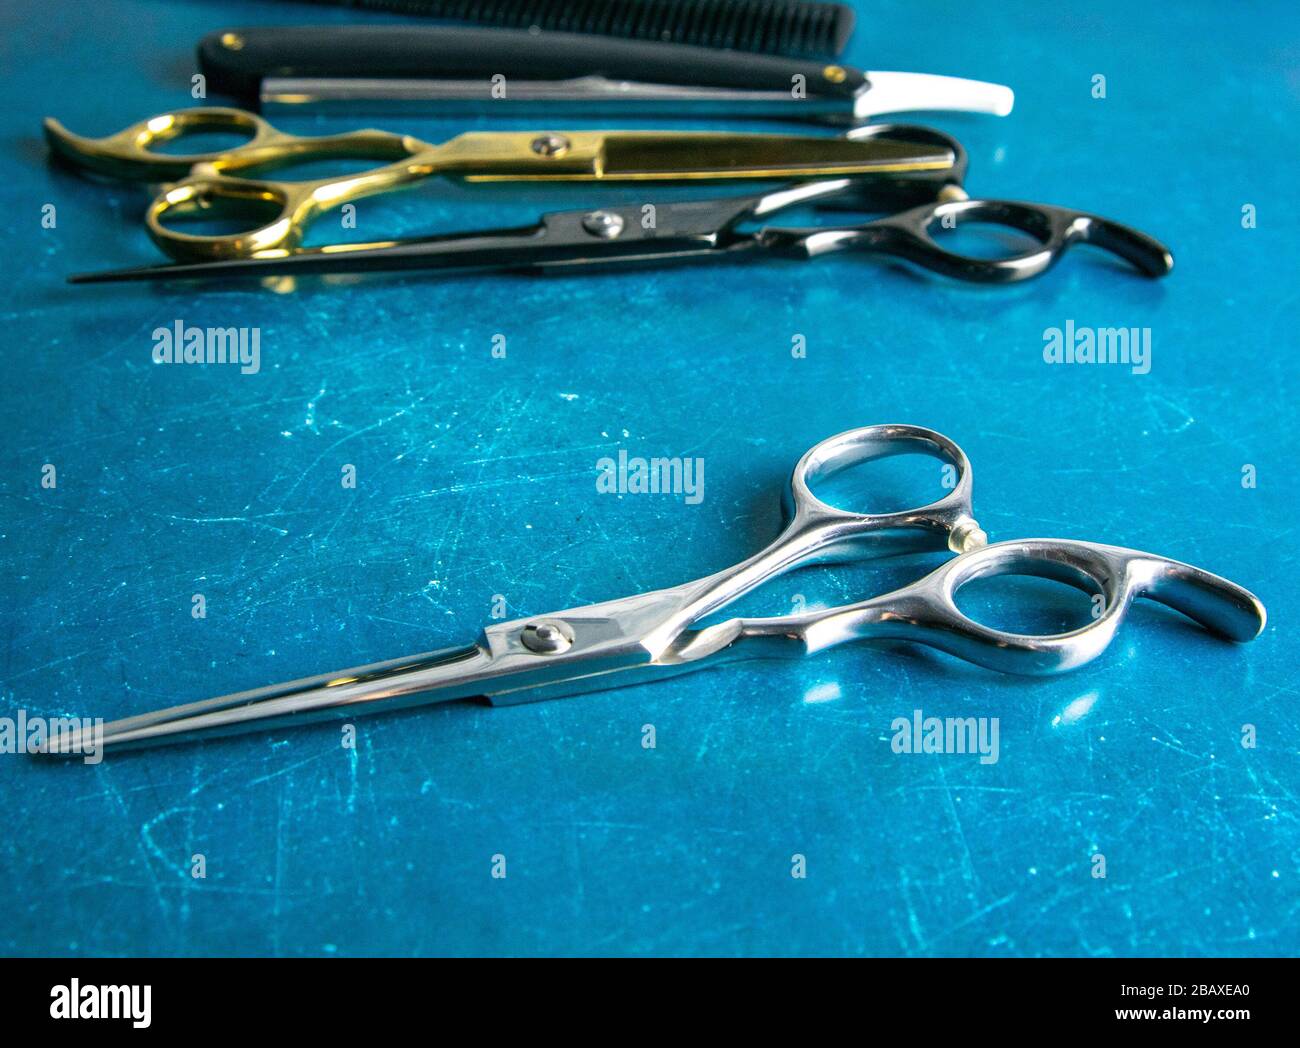 Frisierwerkzeuge, Schere, Haarschneider, Kamm, gefährlicher Rasierer,  Haargel stehen auf blauem Grund Stockfotografie - Alamy